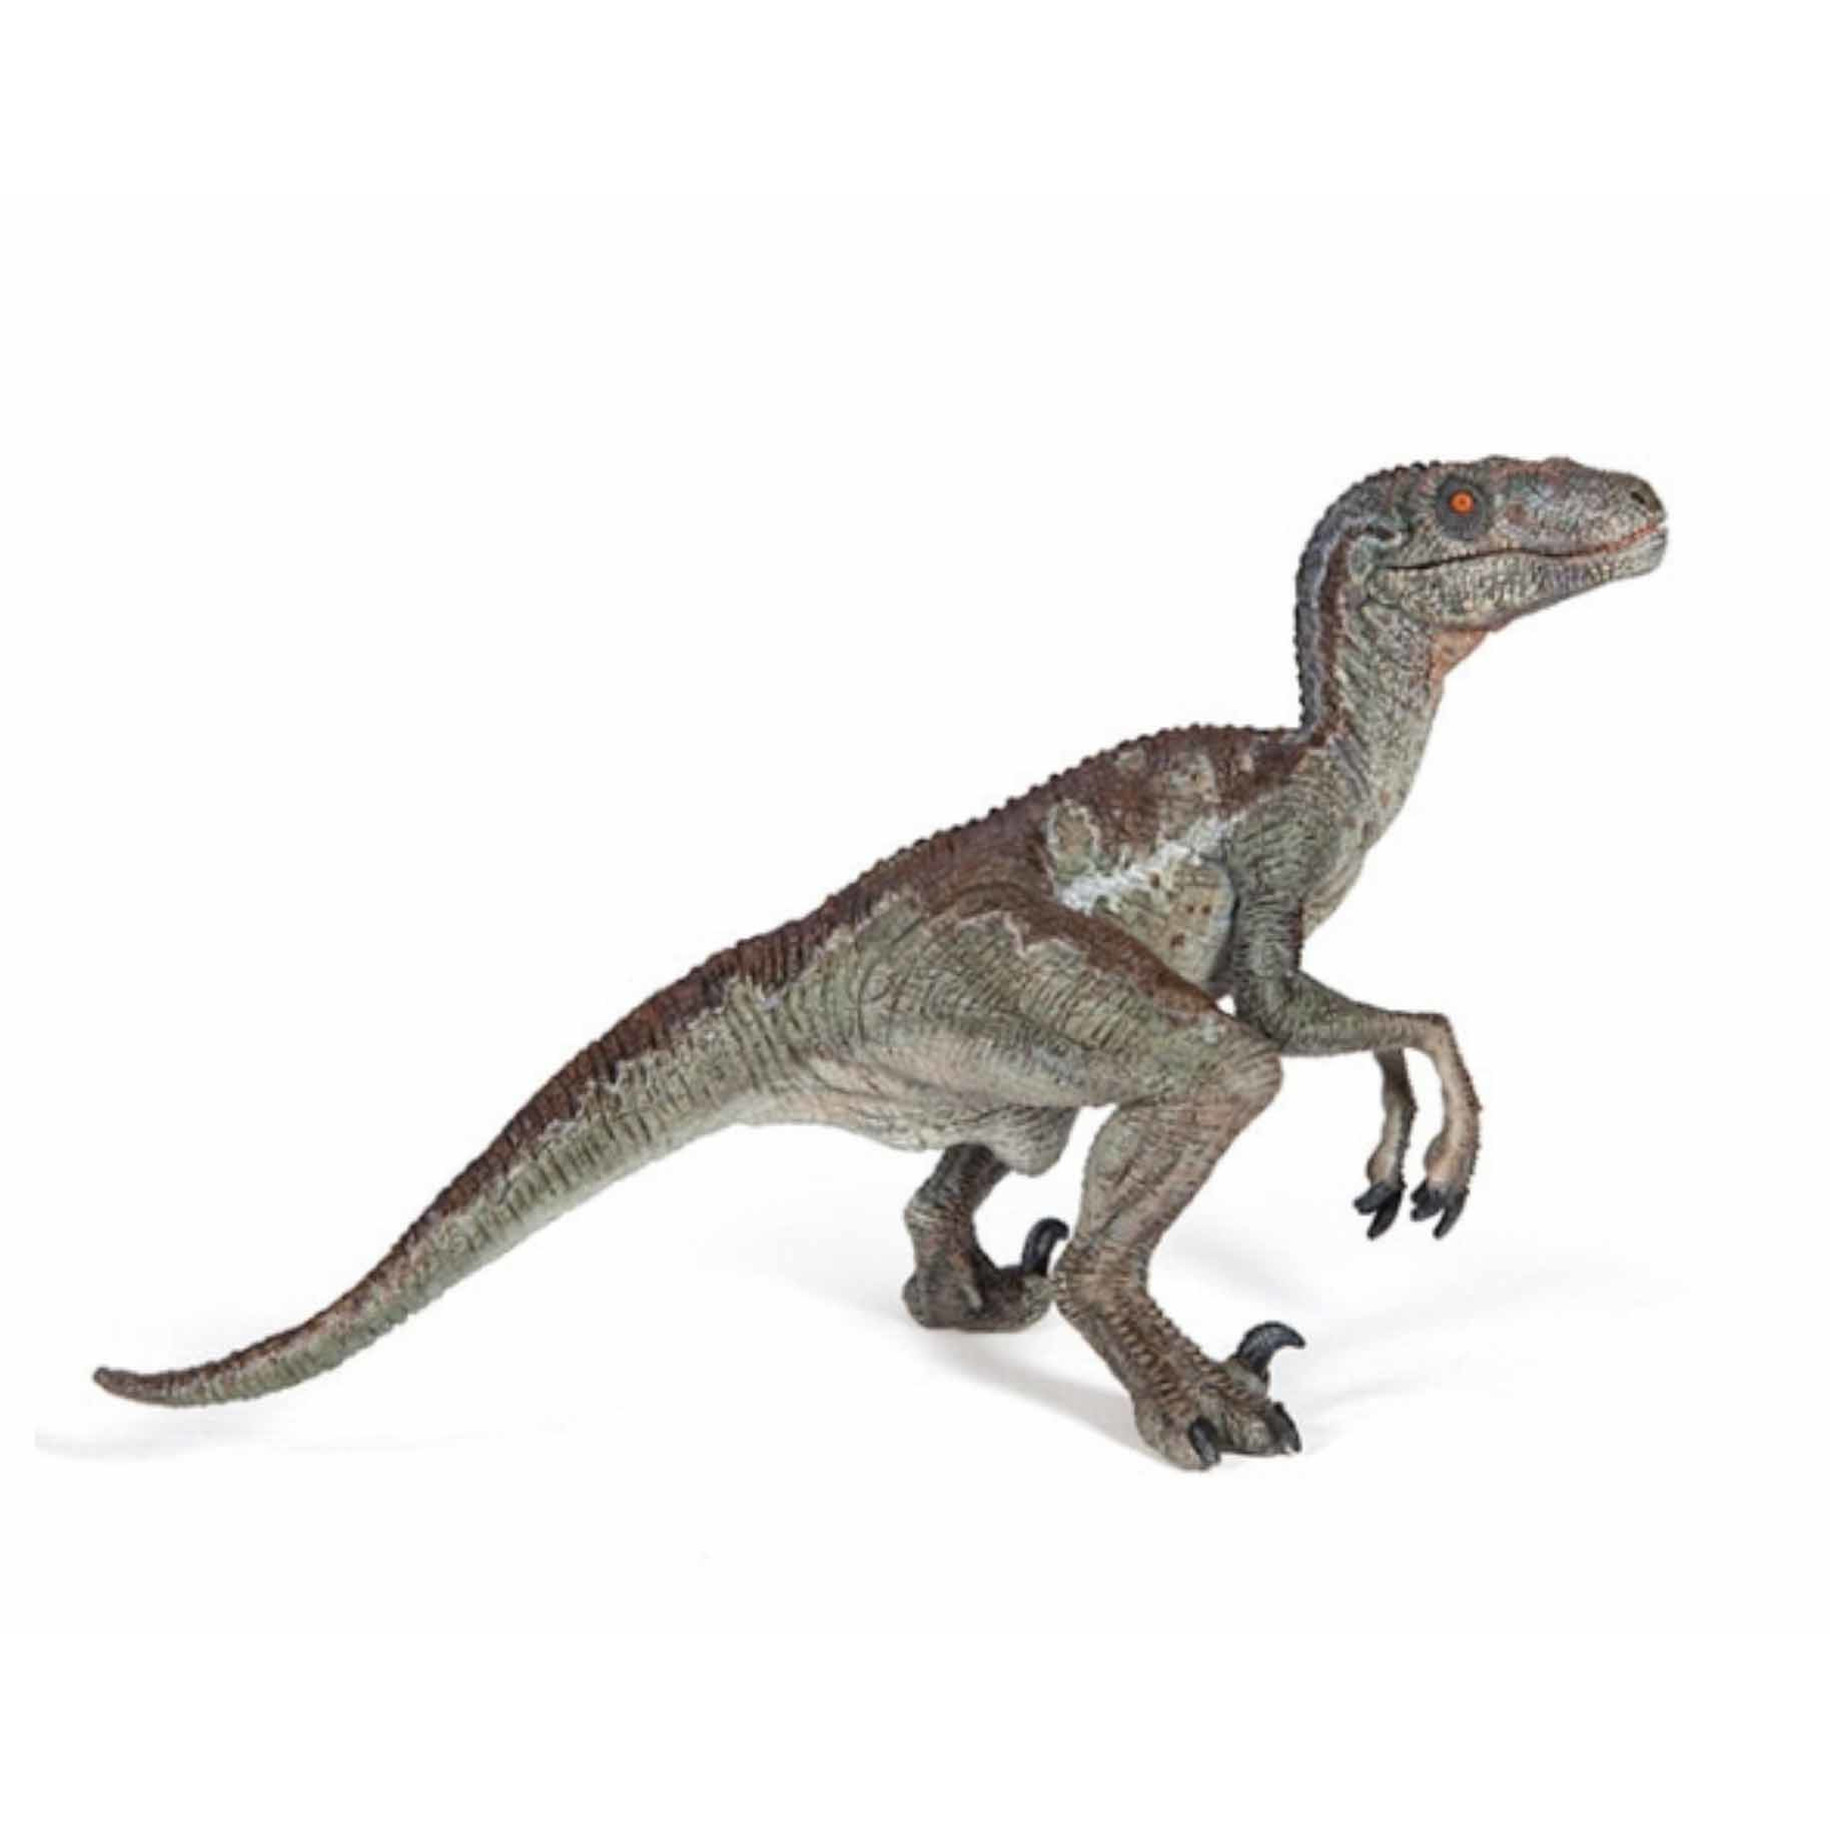 Plastic speelfiguur velociraptor dinosaurus 15 cm